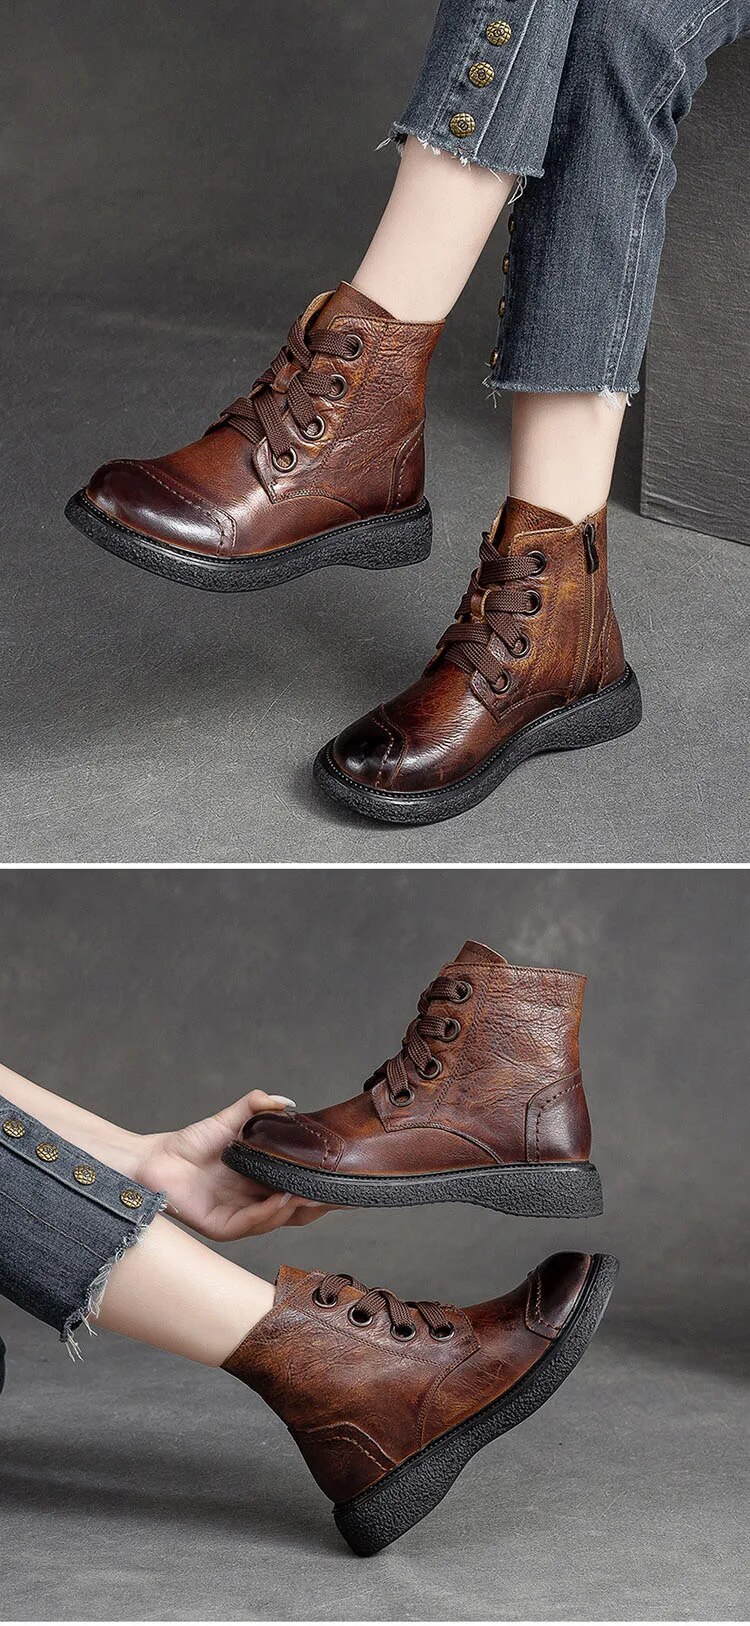 come4buy.com-Ankle Boots Kulit Coklat Untuk Wanita